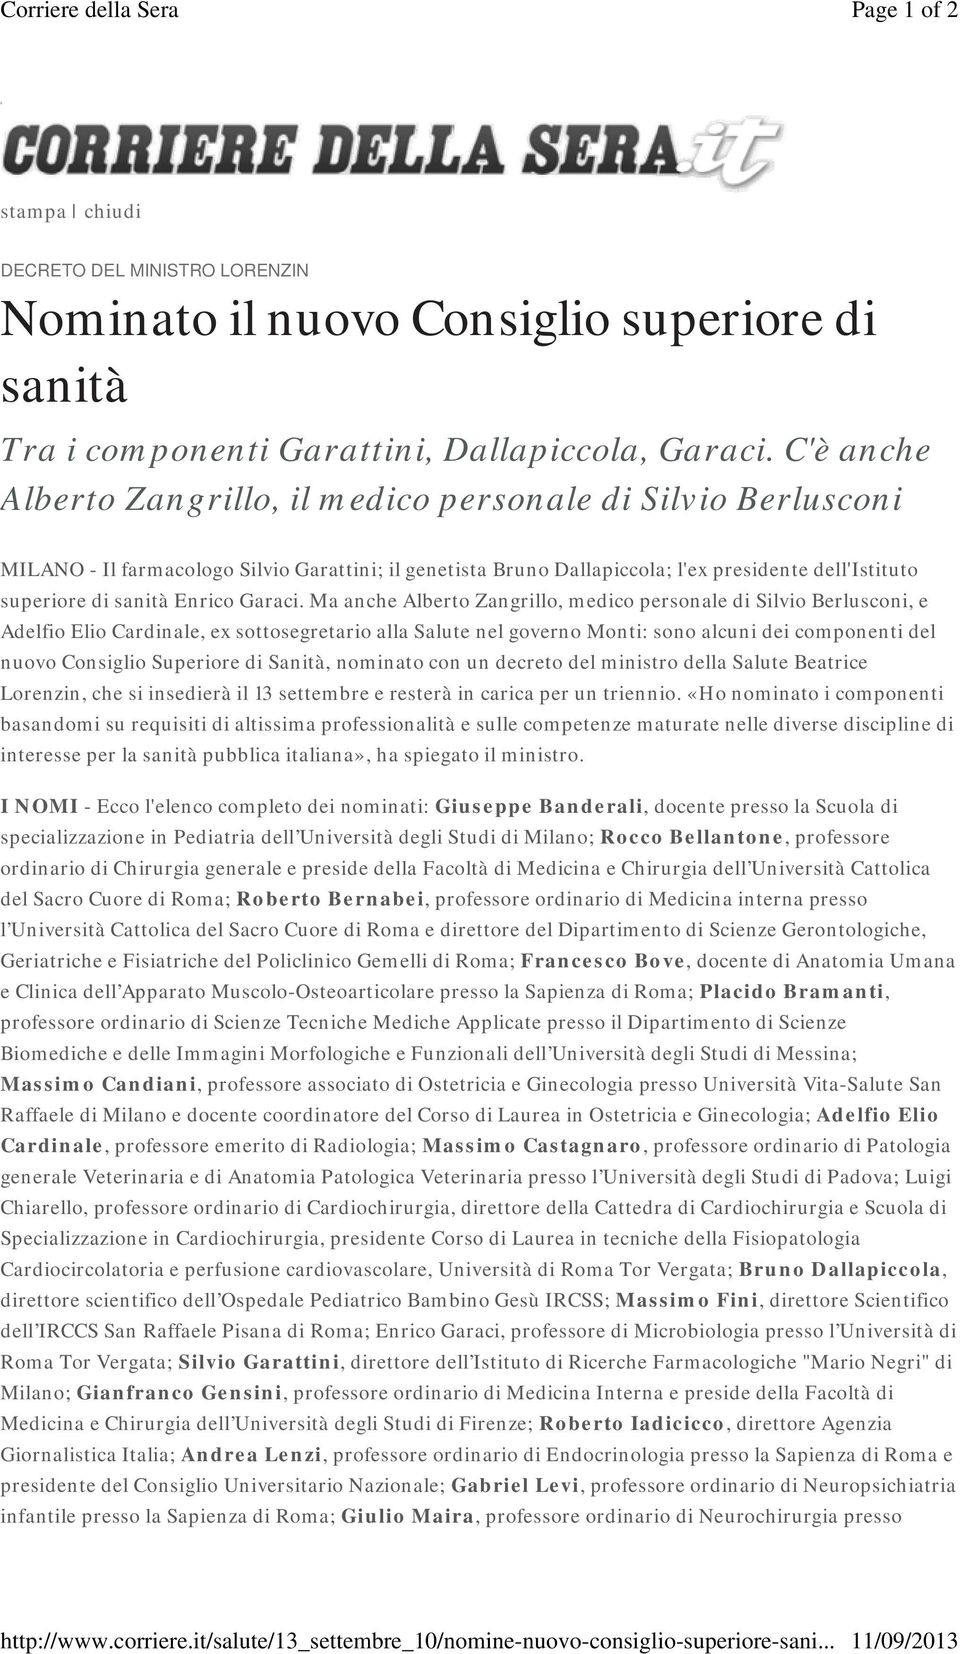 C'è anche Alberto Zangrillo, il medico personale di Silvio Berlusconi MILANO - Il farmacologo Silvio Garattini; il genetista Bruno Dallapiccola; l'ex presidente dell'istituto superiore di sanità